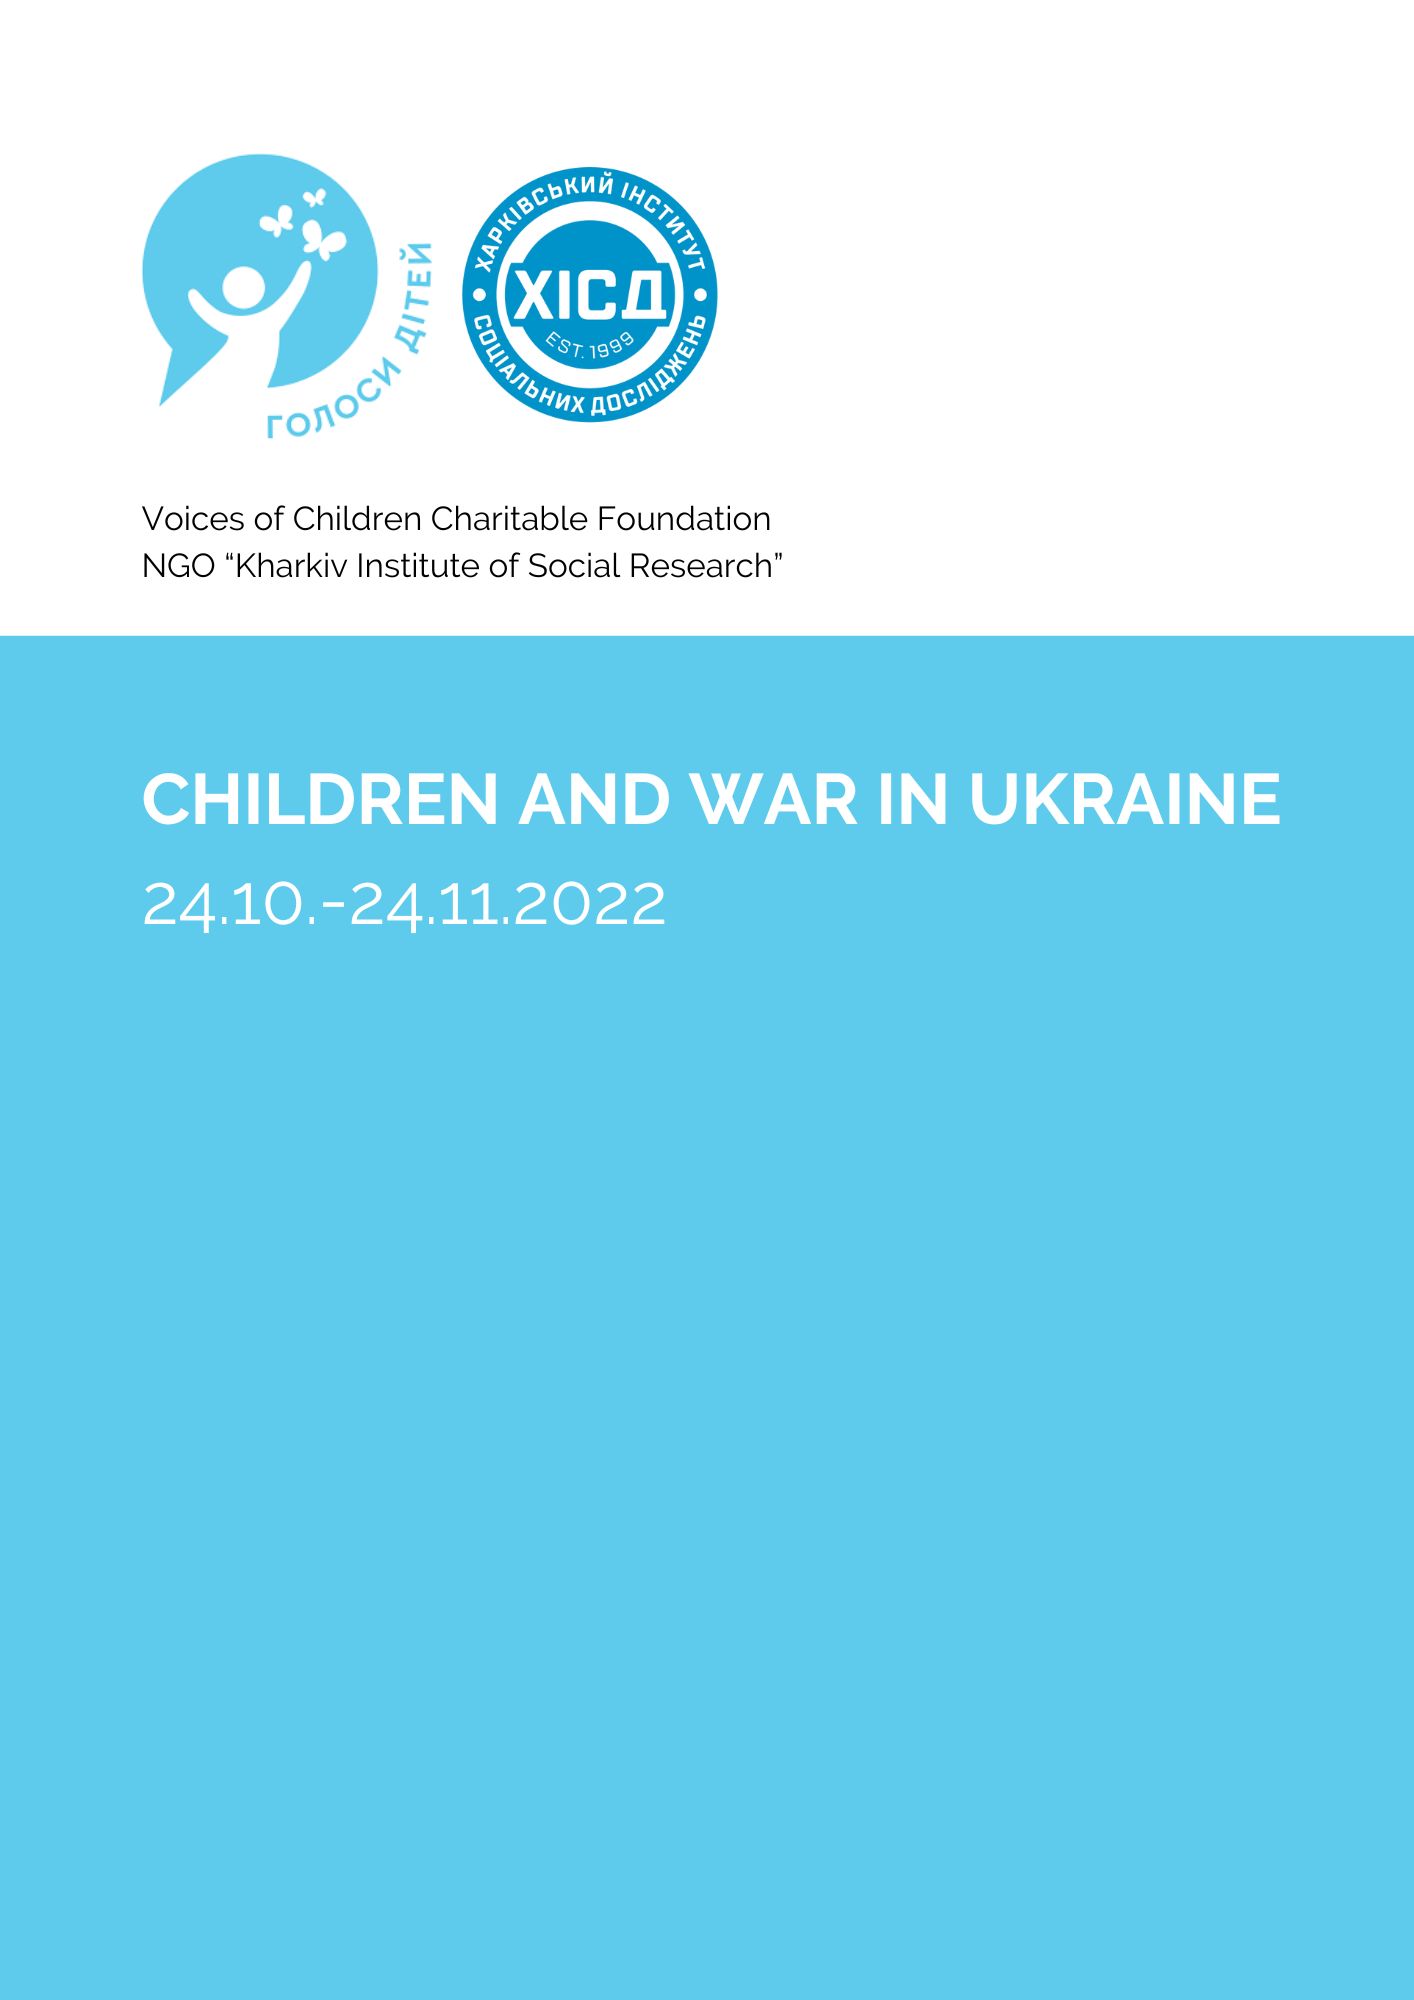 Children and the war in Ukraine 24.10.-24.11.2022